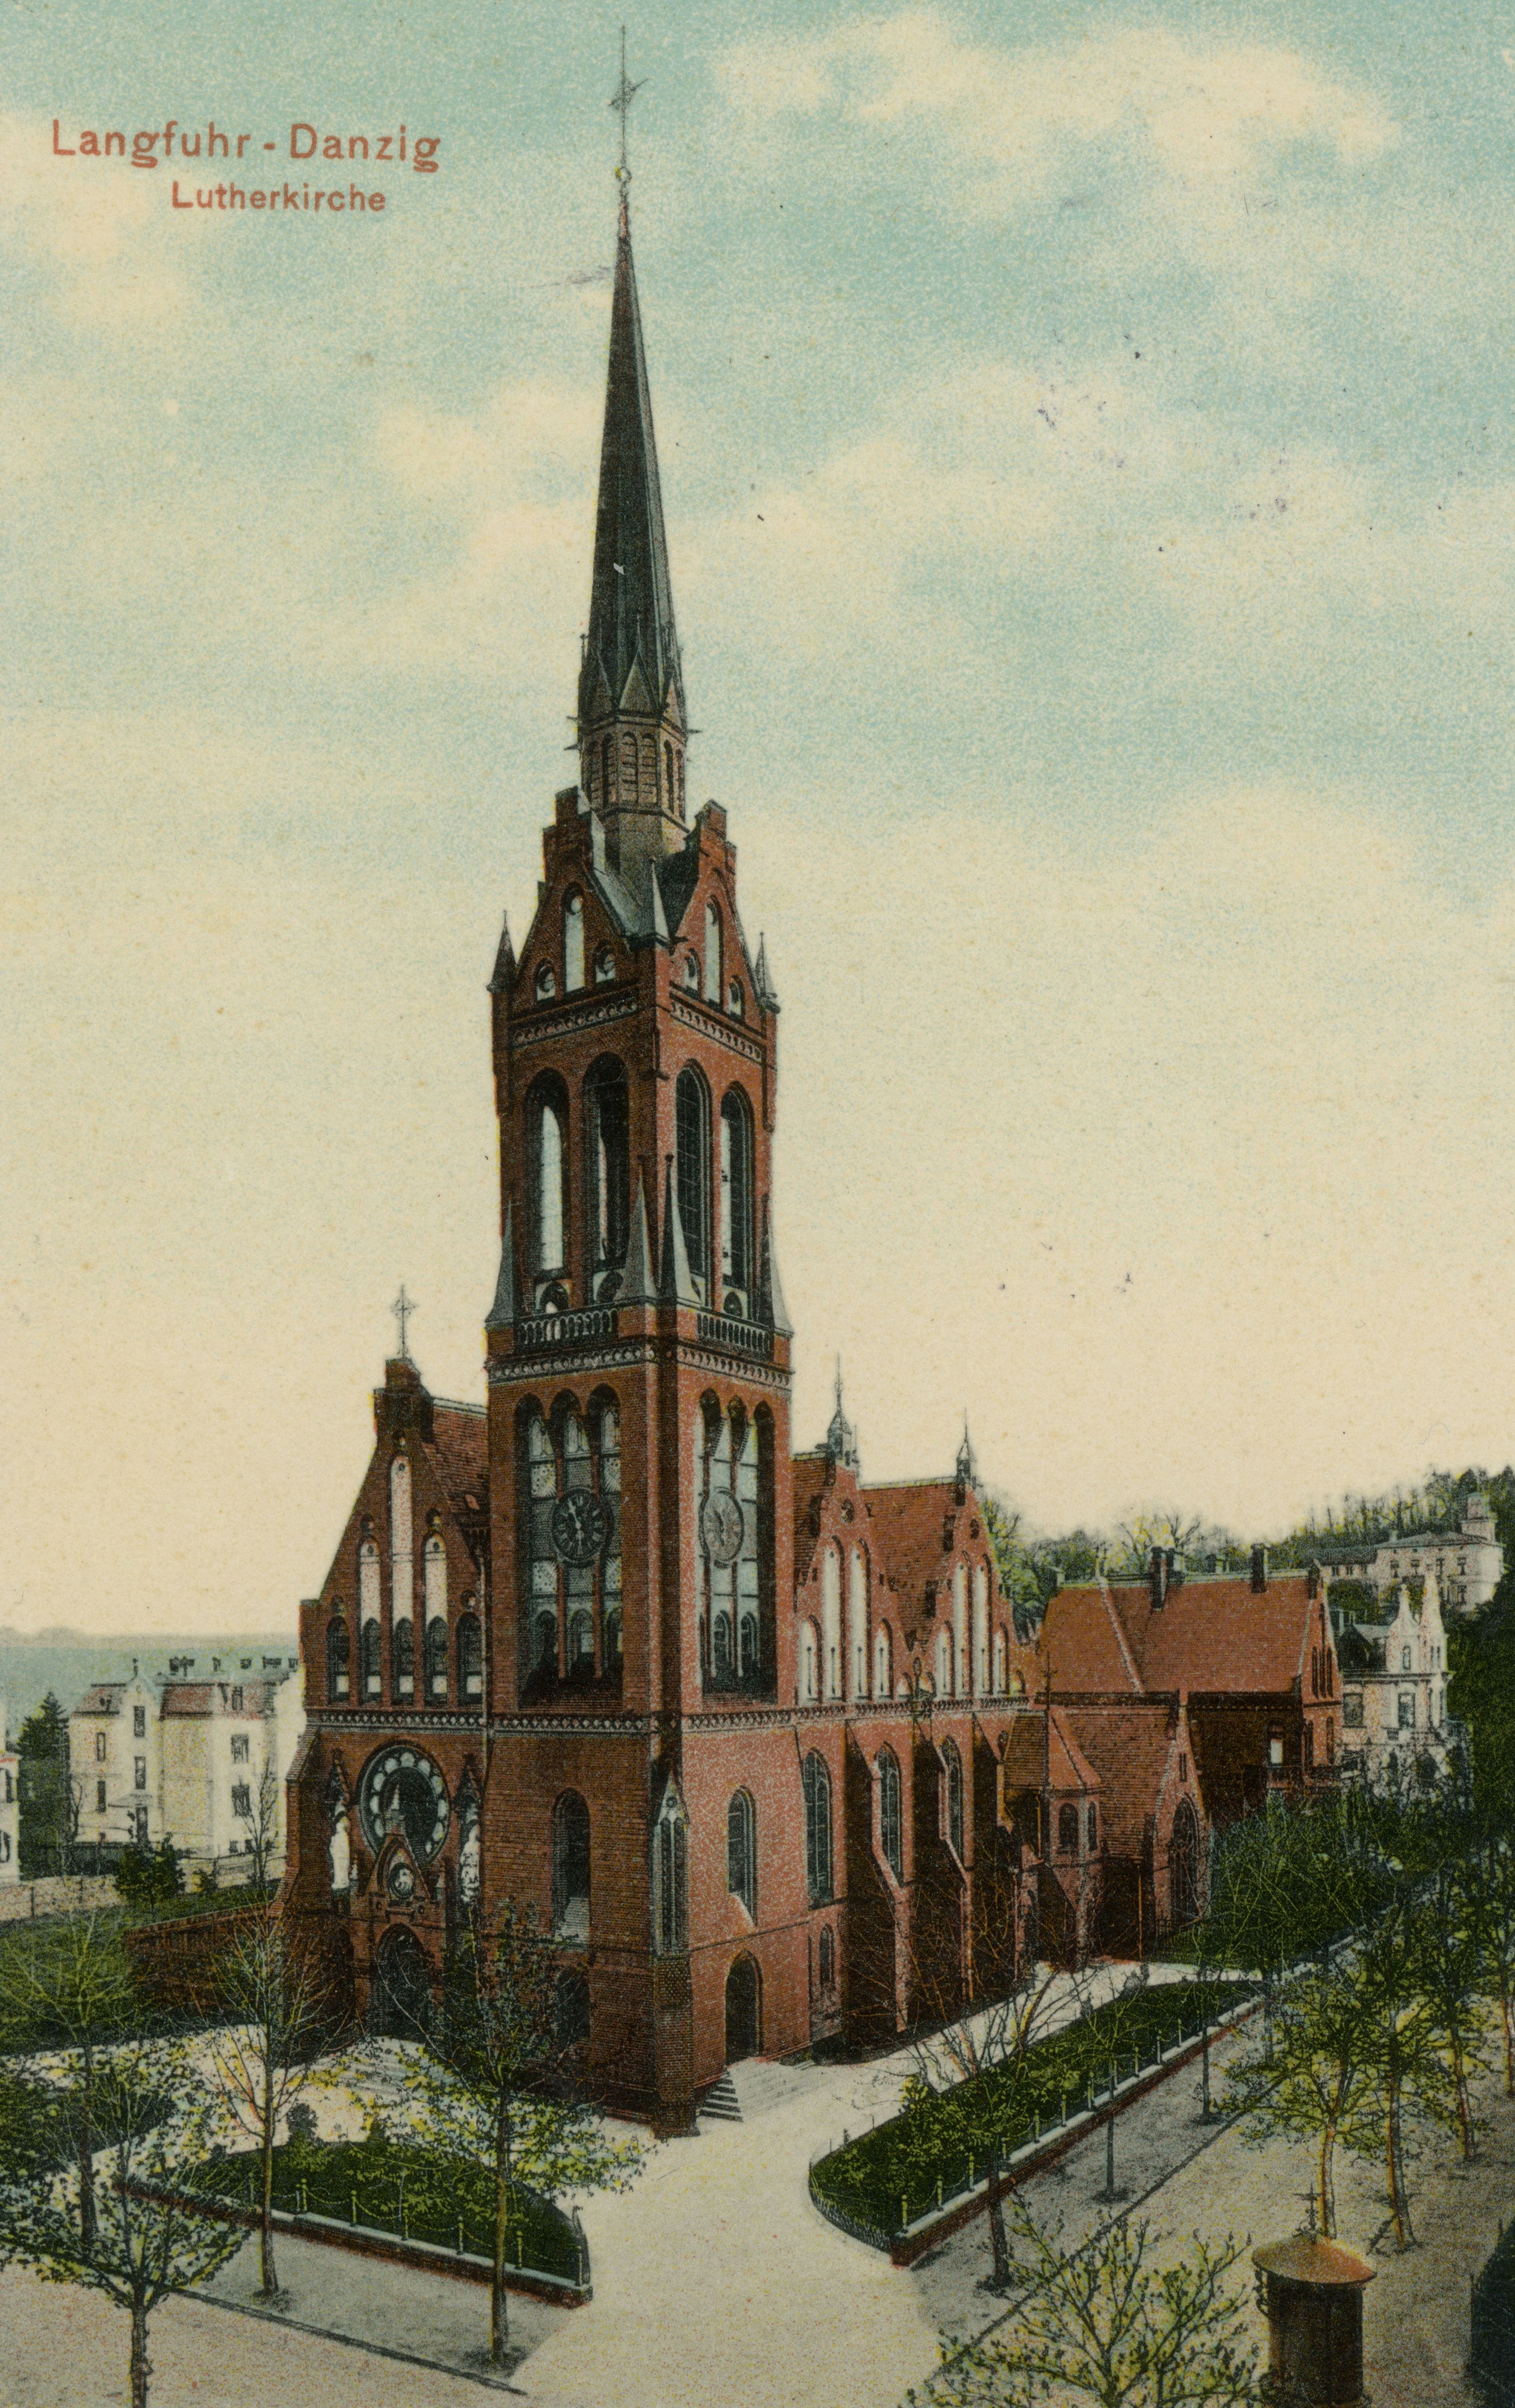 Pocztówka prezentująca dawny Lutherkirche, czyli obecny kościół pw. Św. Apostołów Piotra i Pawła